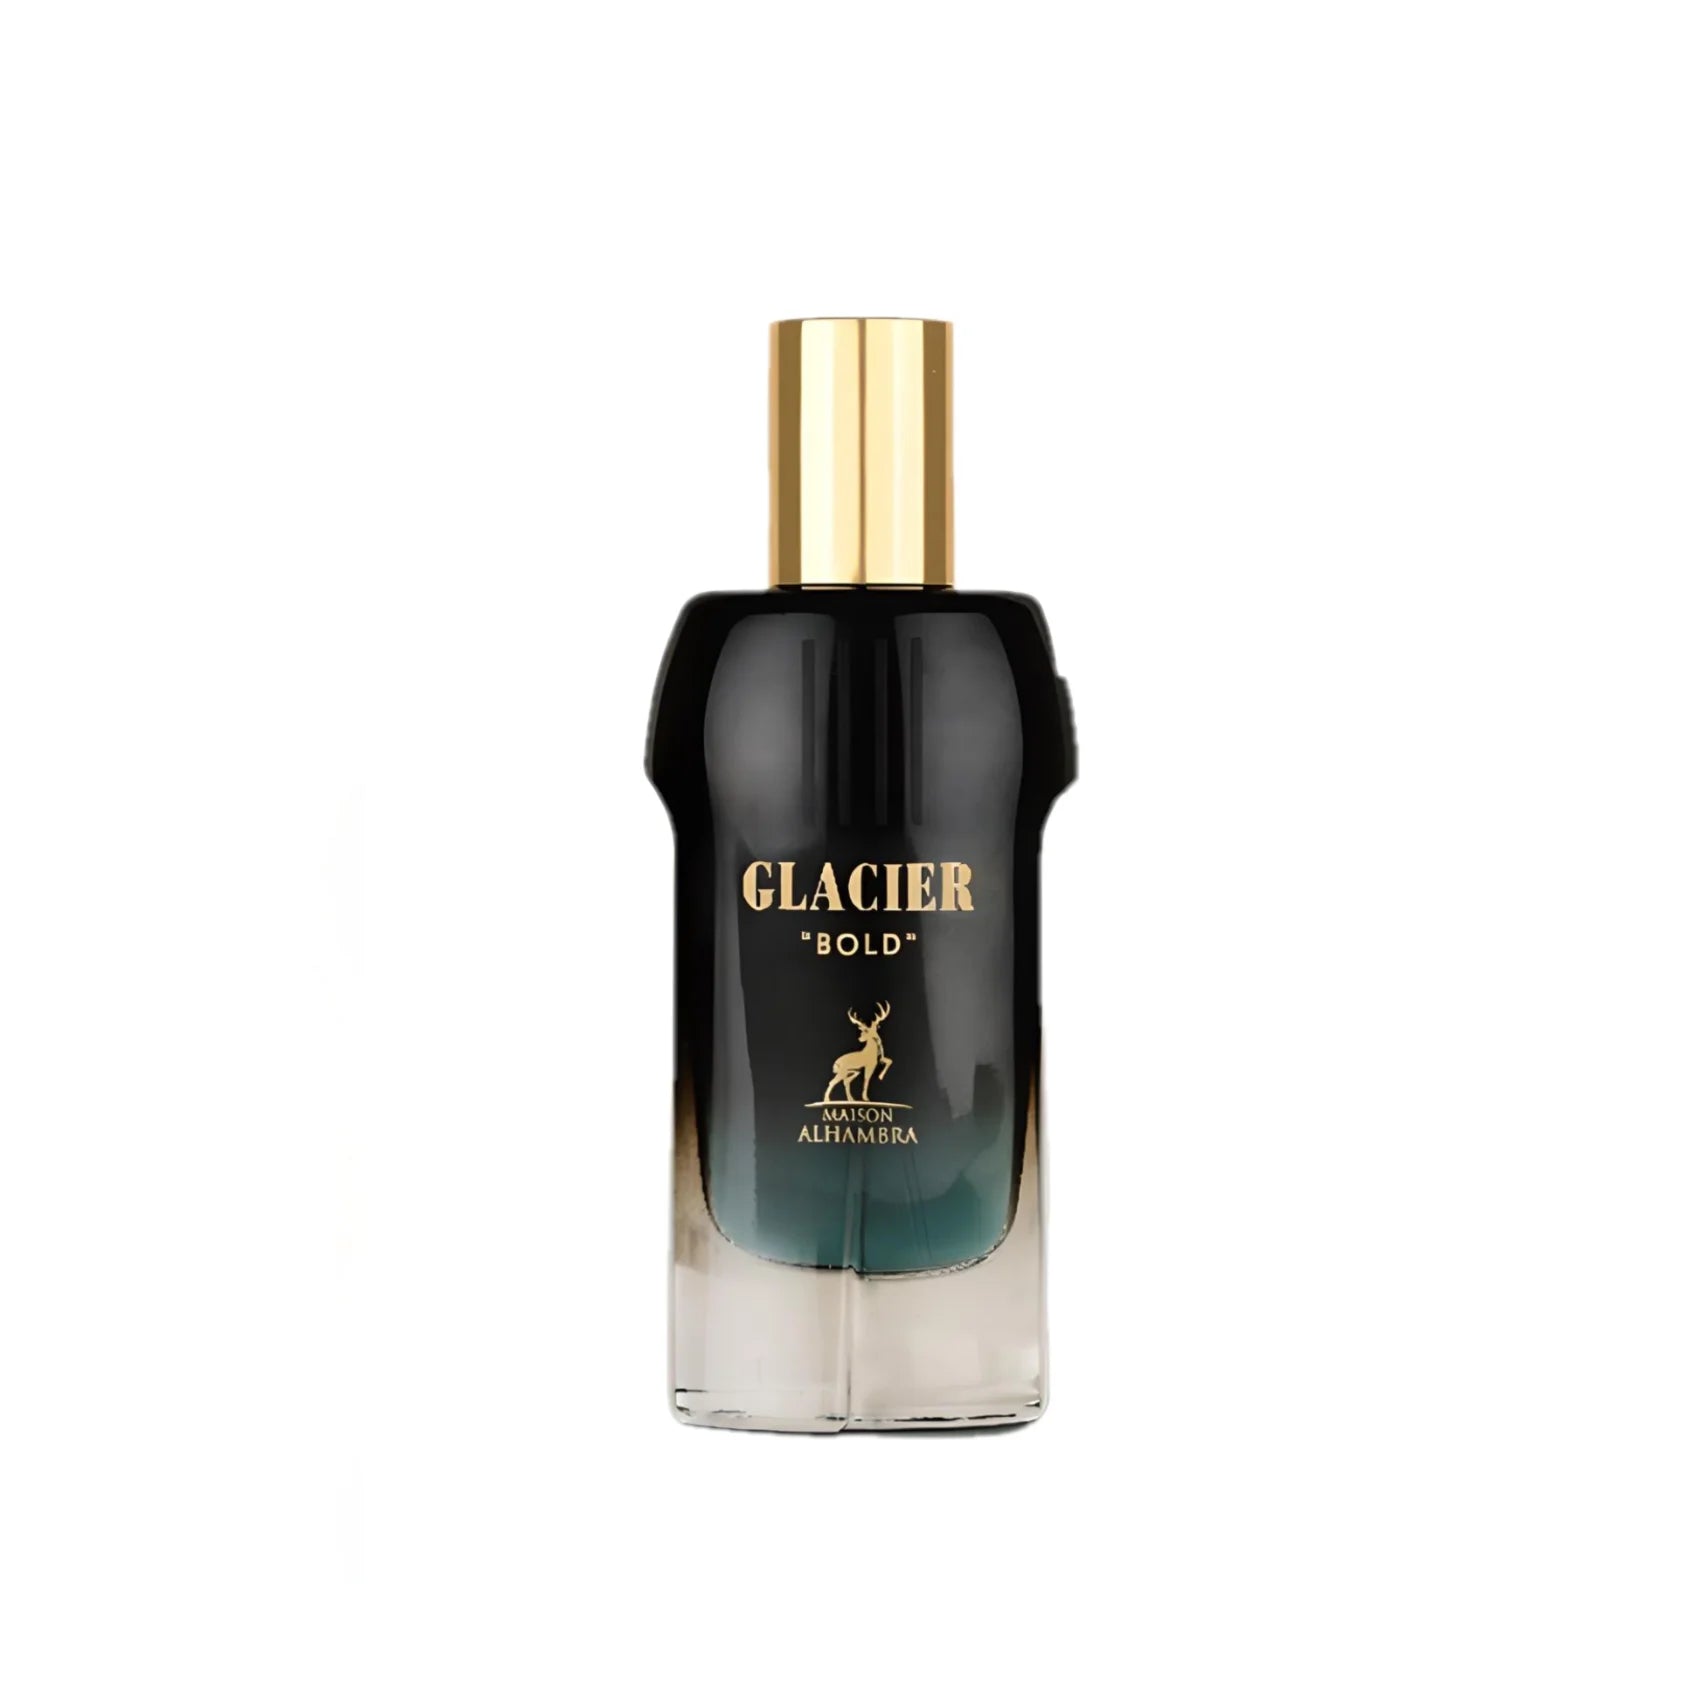 Glacier Bold | EAU De Perfume 100ml | by Maison Alhambra